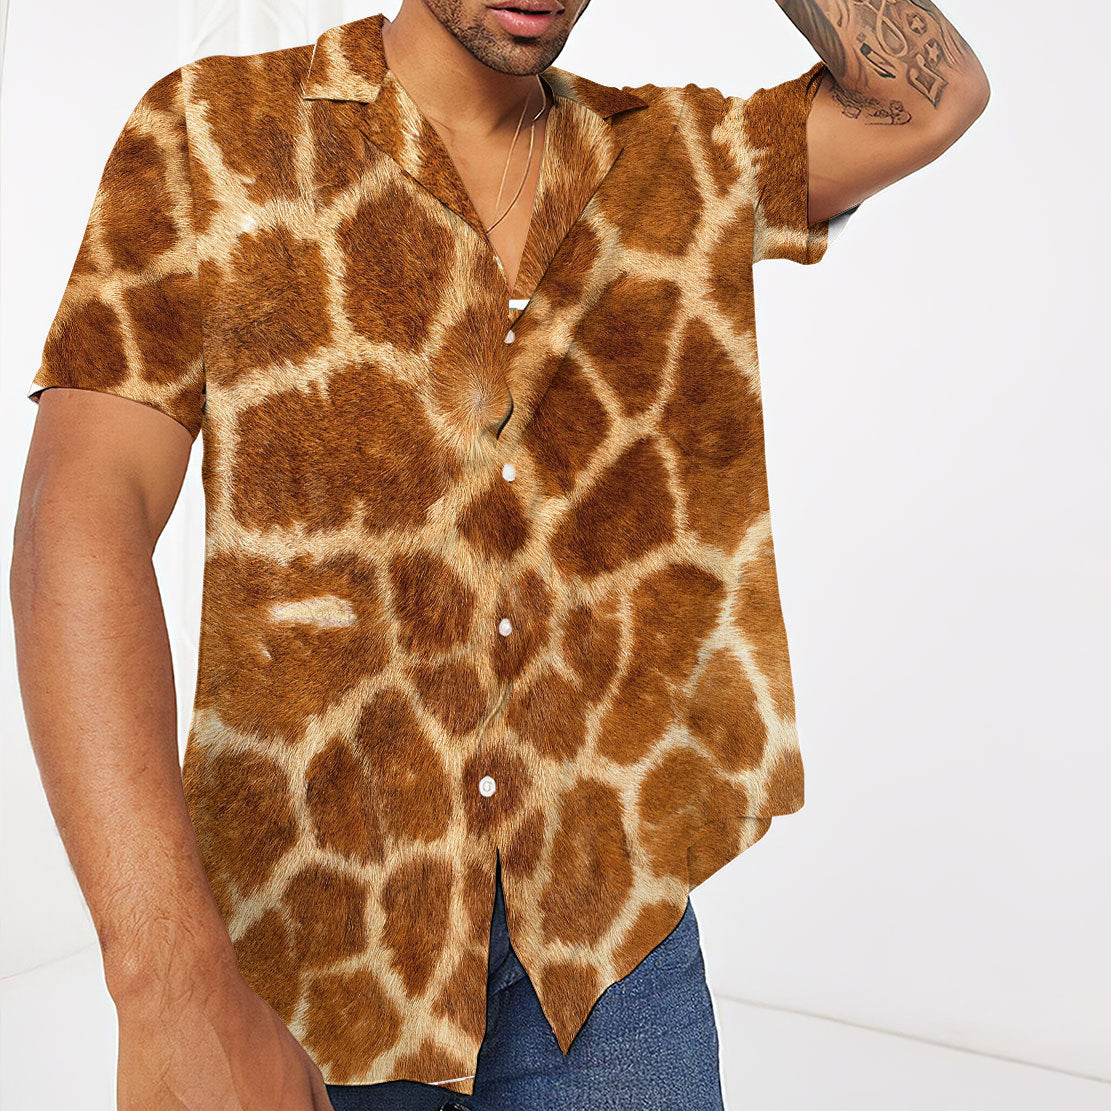 Giraffe Hawaii Shirt 5